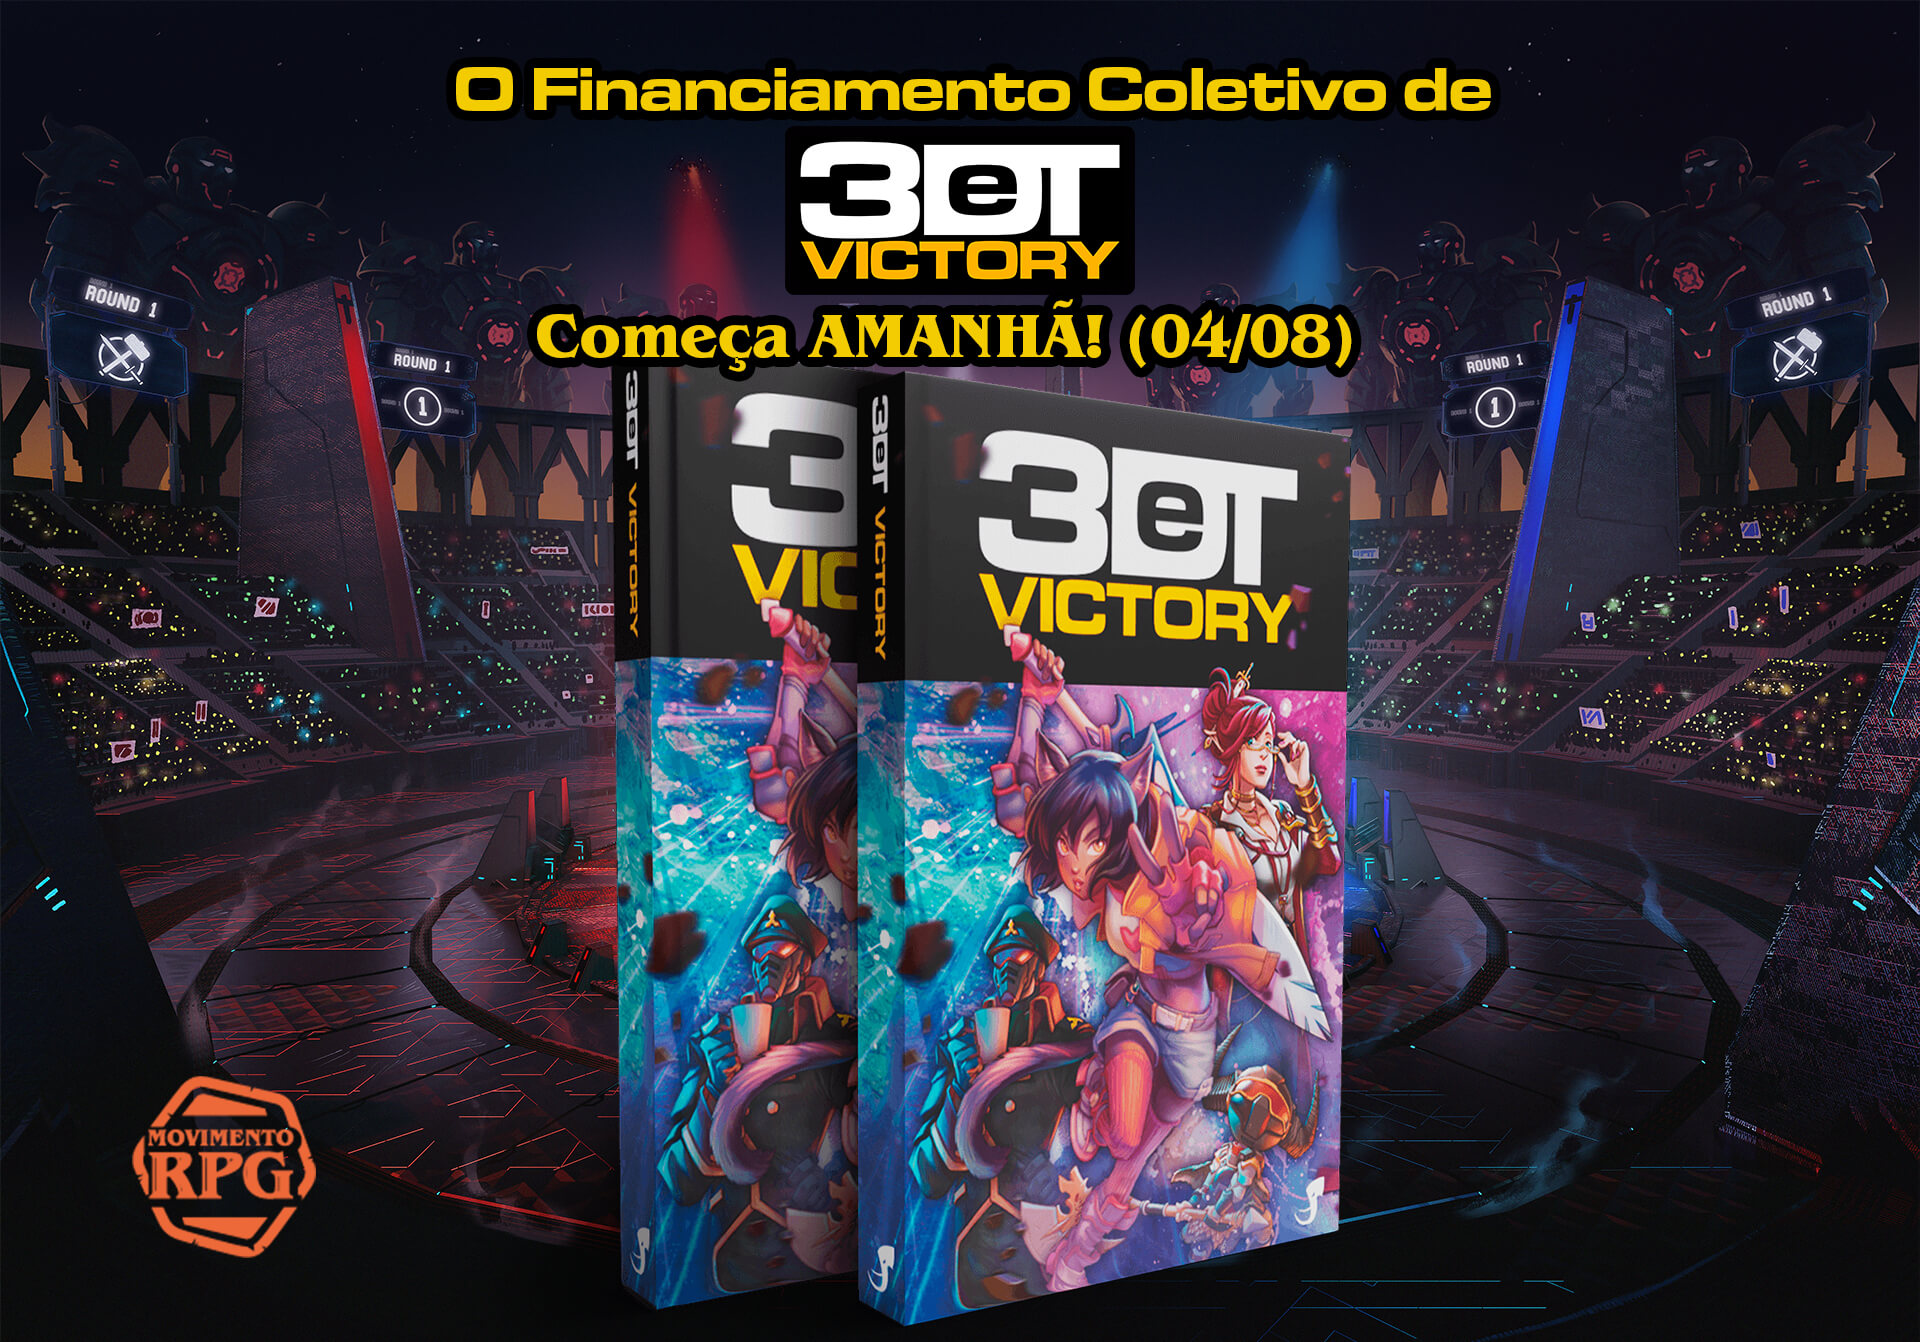 O Financiamento Coletivo de 3DeT Victory começa amanhã! (04/08) – 3DeT Victory